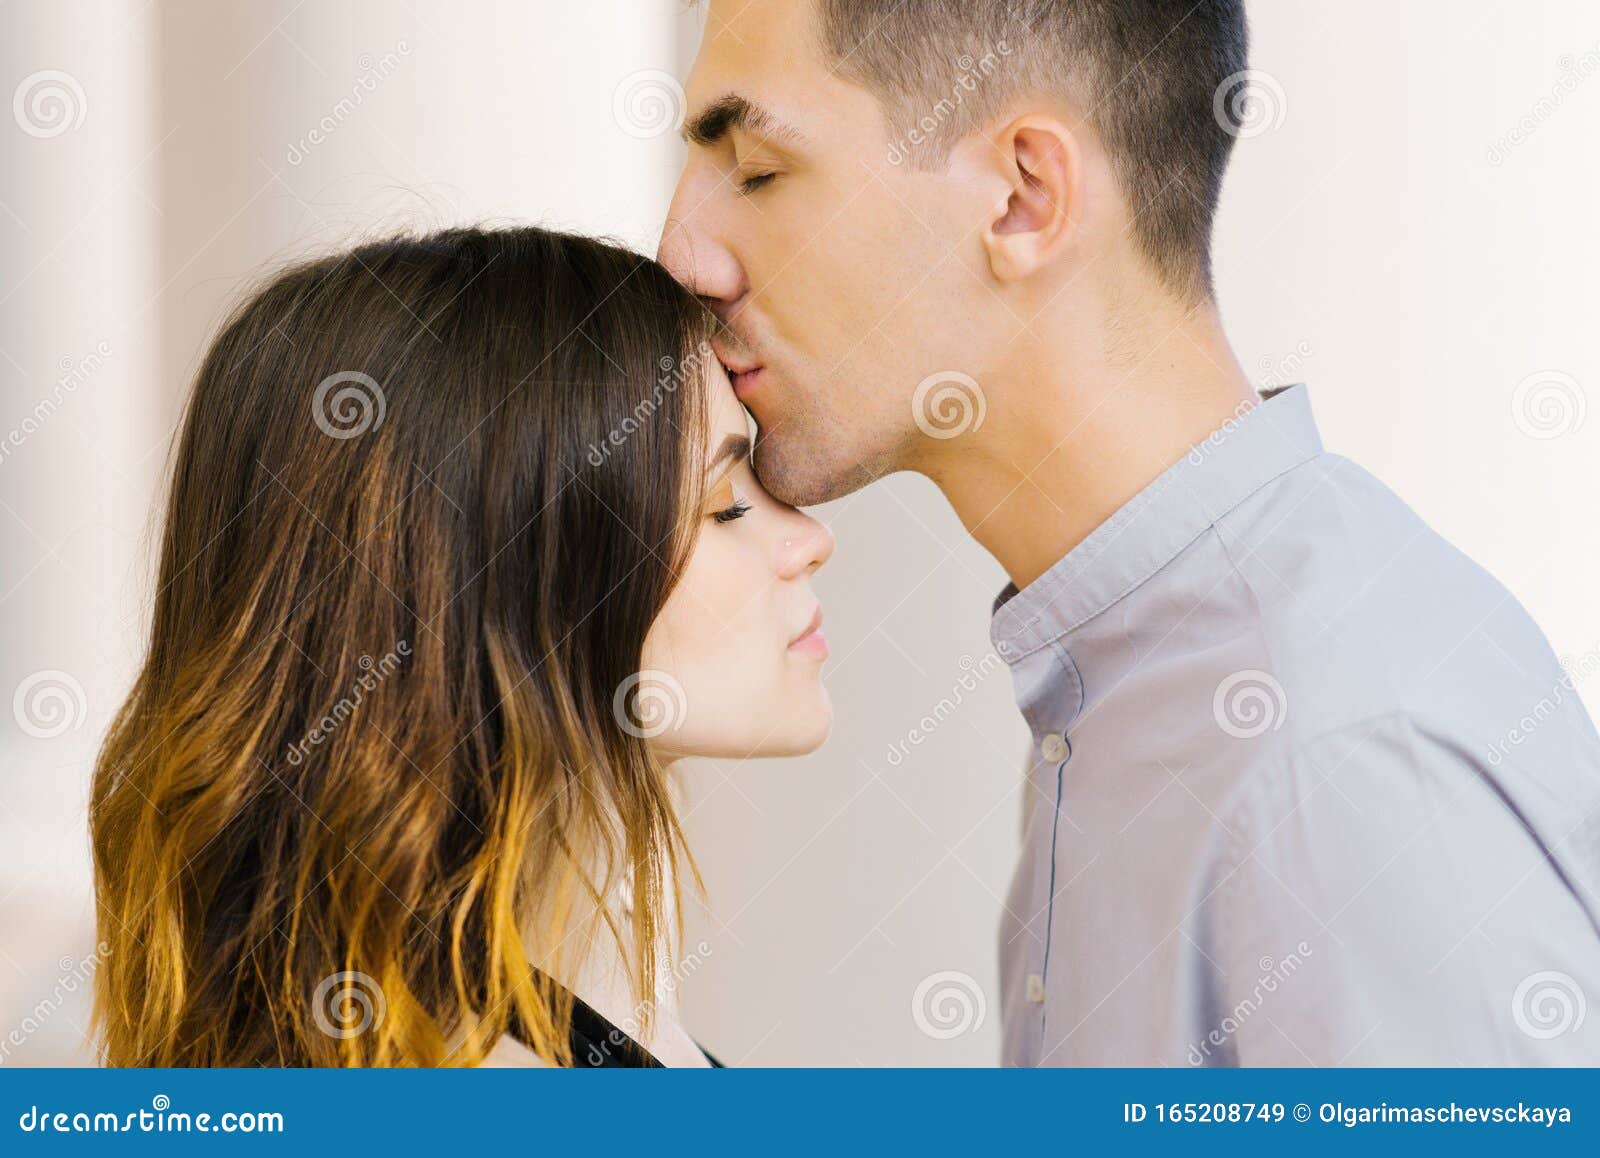 Поцелуй в лоб что означает от мужчины. Поцелуй в лоб. Отеческий поцелуй в лоб. Поцелуй в лоб от мужчины. Парень целует девушку в лоб.